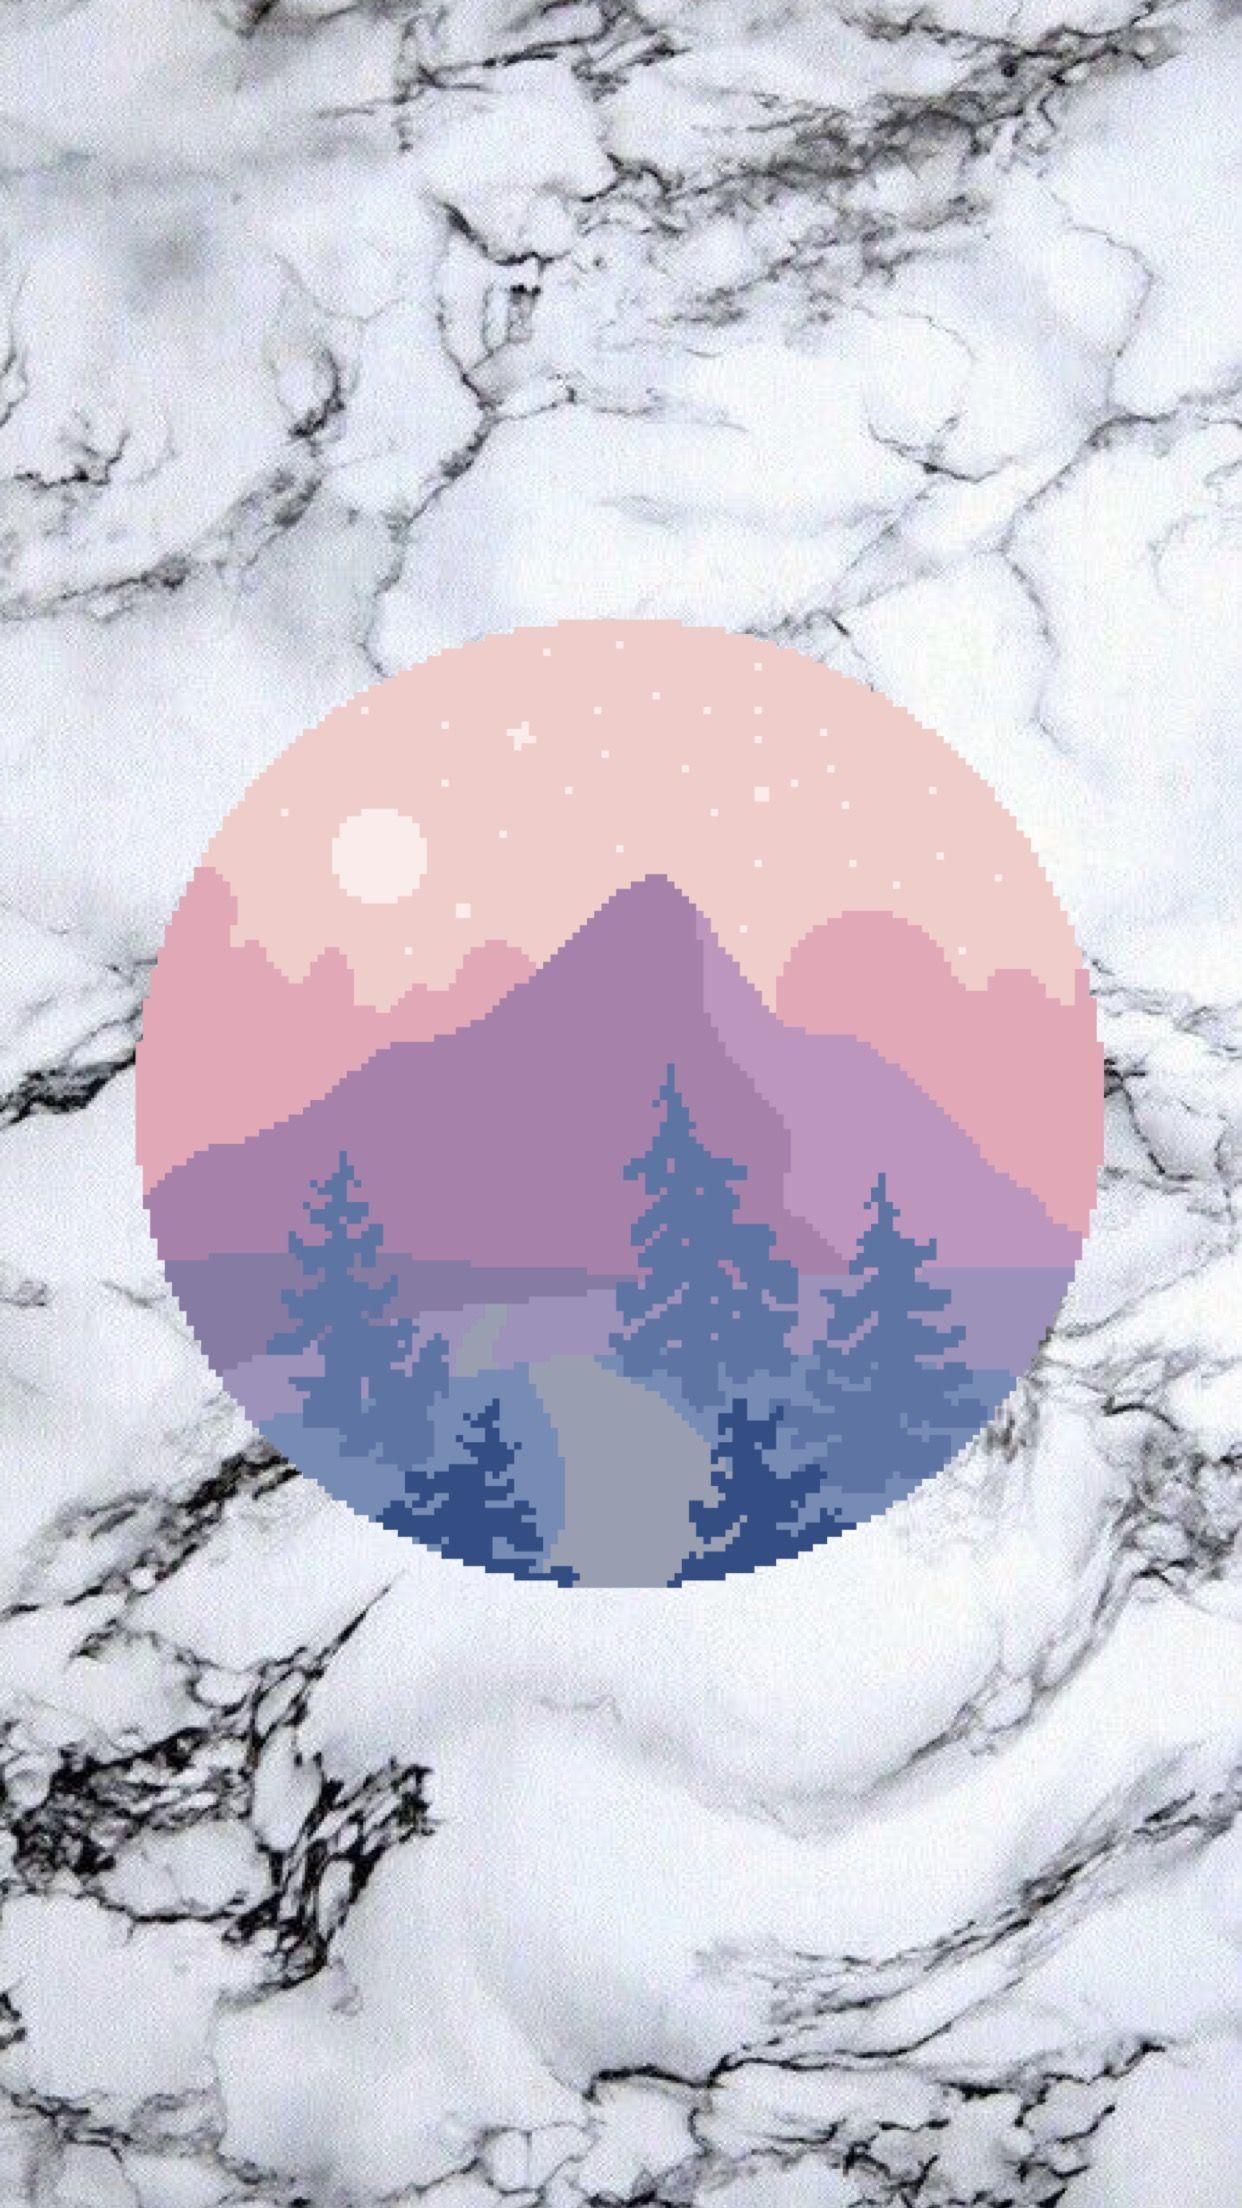 Moon mountain wallpaper. made by Laurette. instagram:. Wallpaper tumblr, Fondos para iphone, Fondo de pantalla para teléfonos